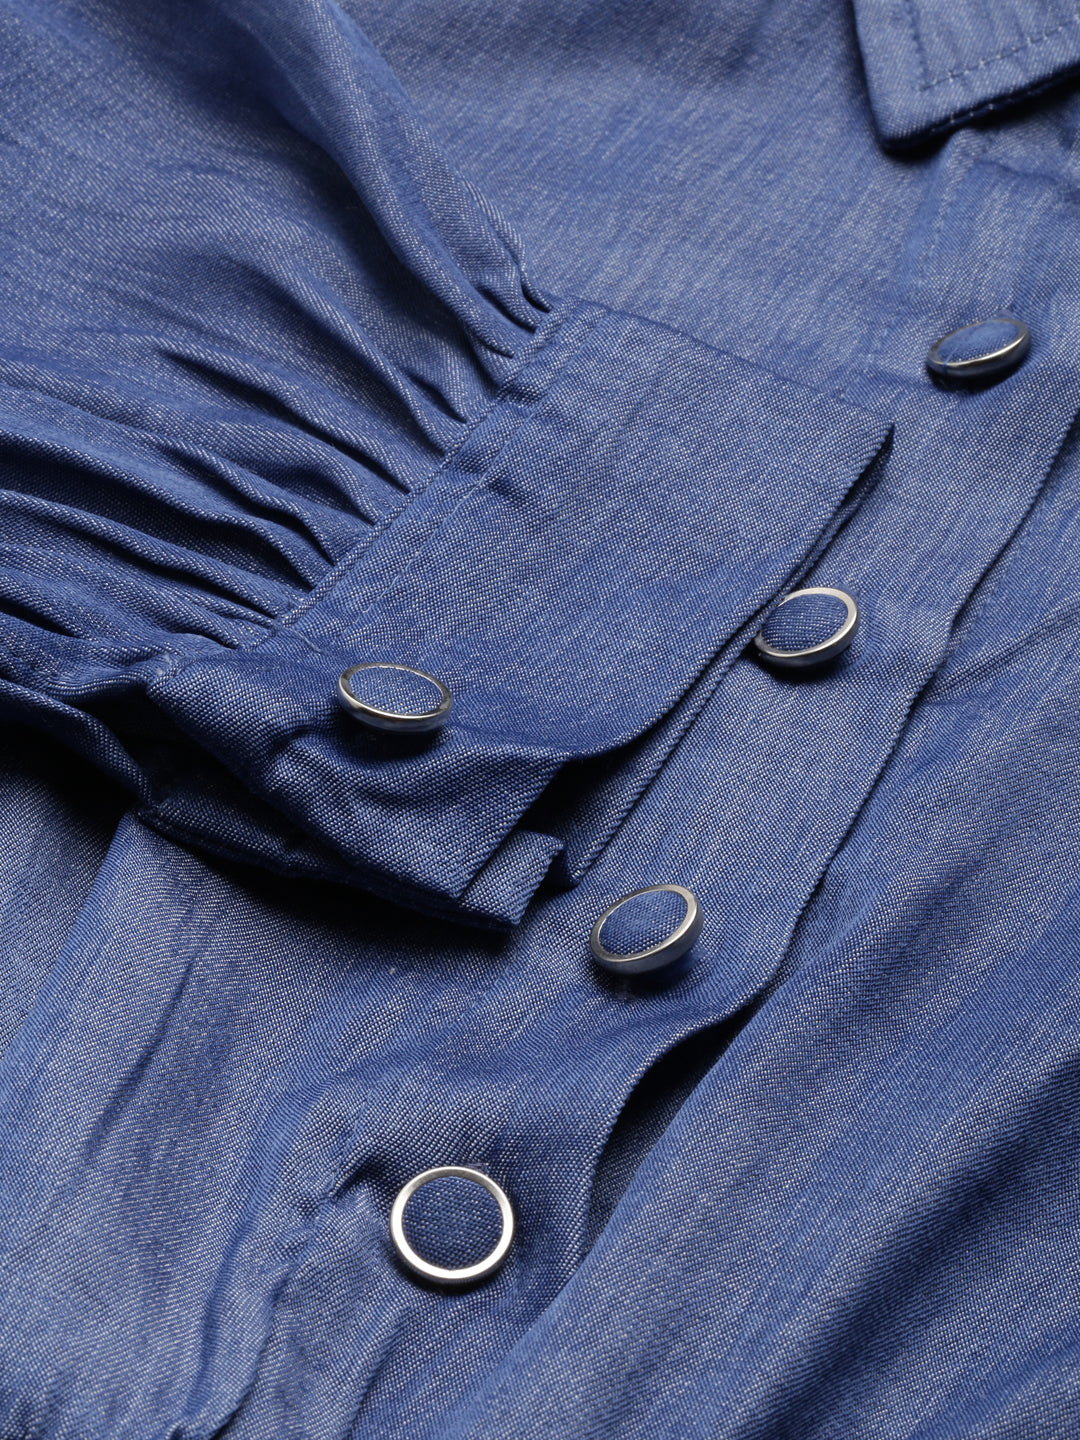 Women Navy Blue Solid Shirt StyleCrop Top